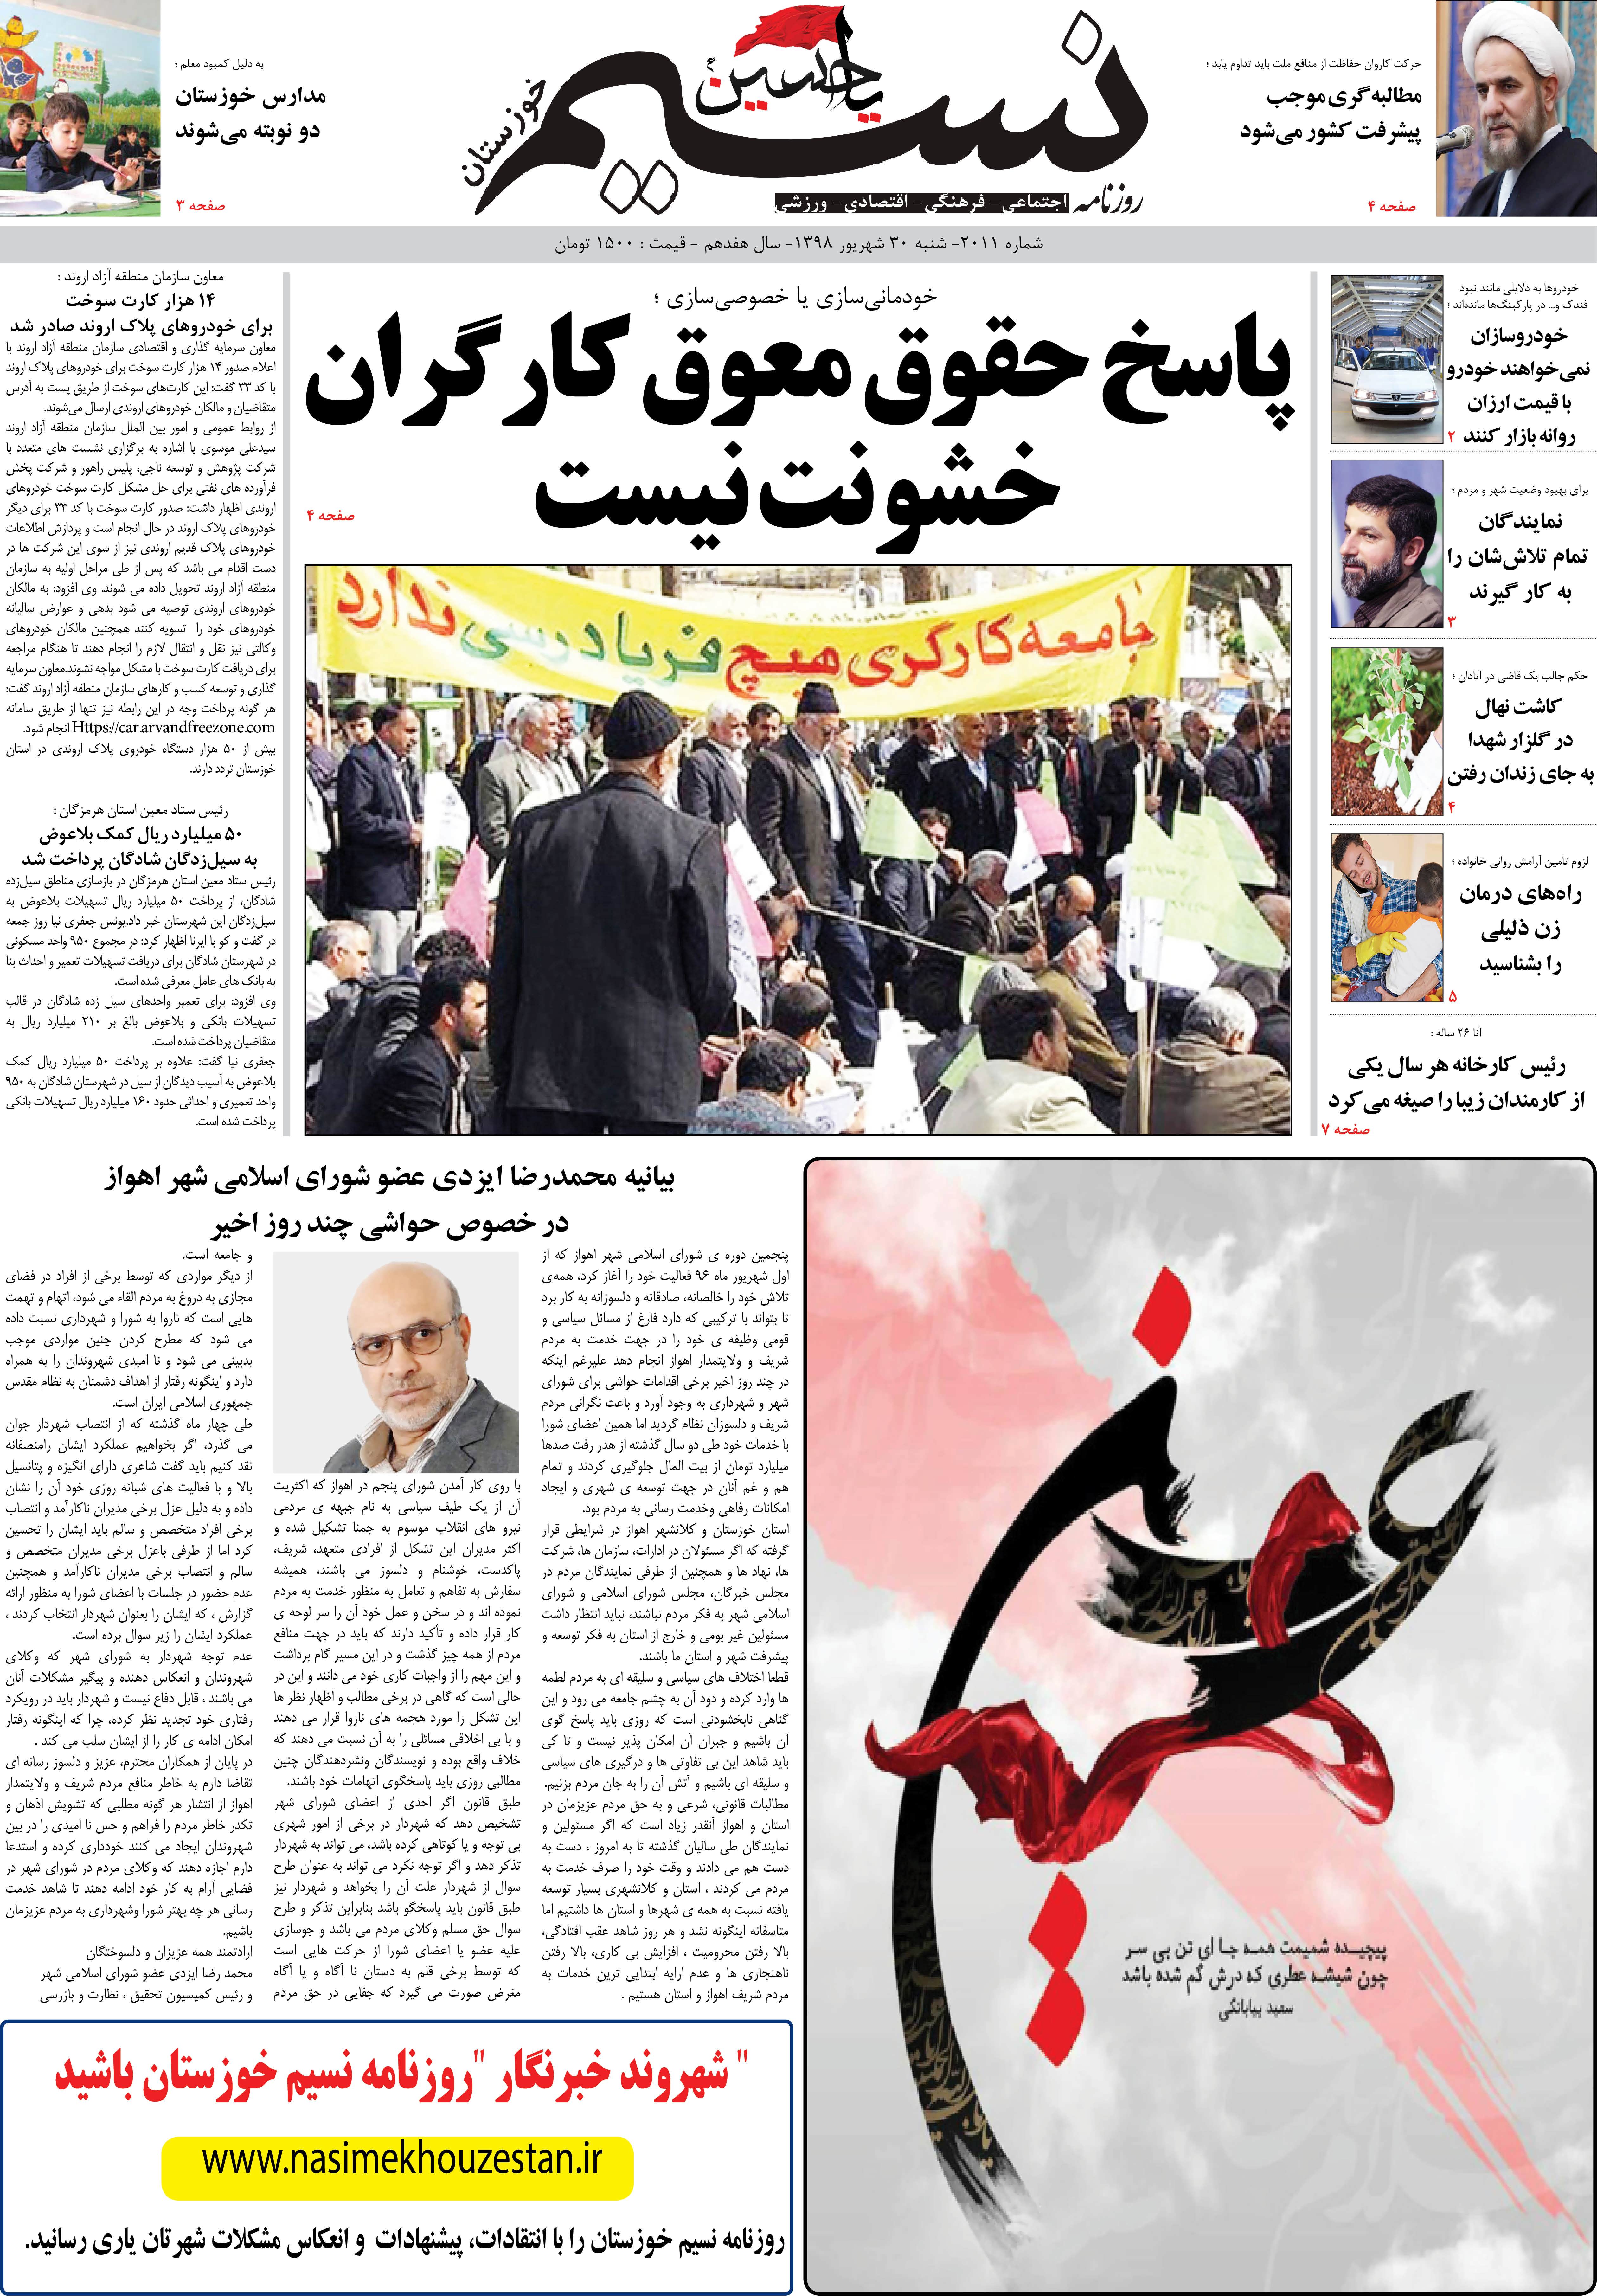 صفحه اصلی روزنامه نسیم شماره 2011 